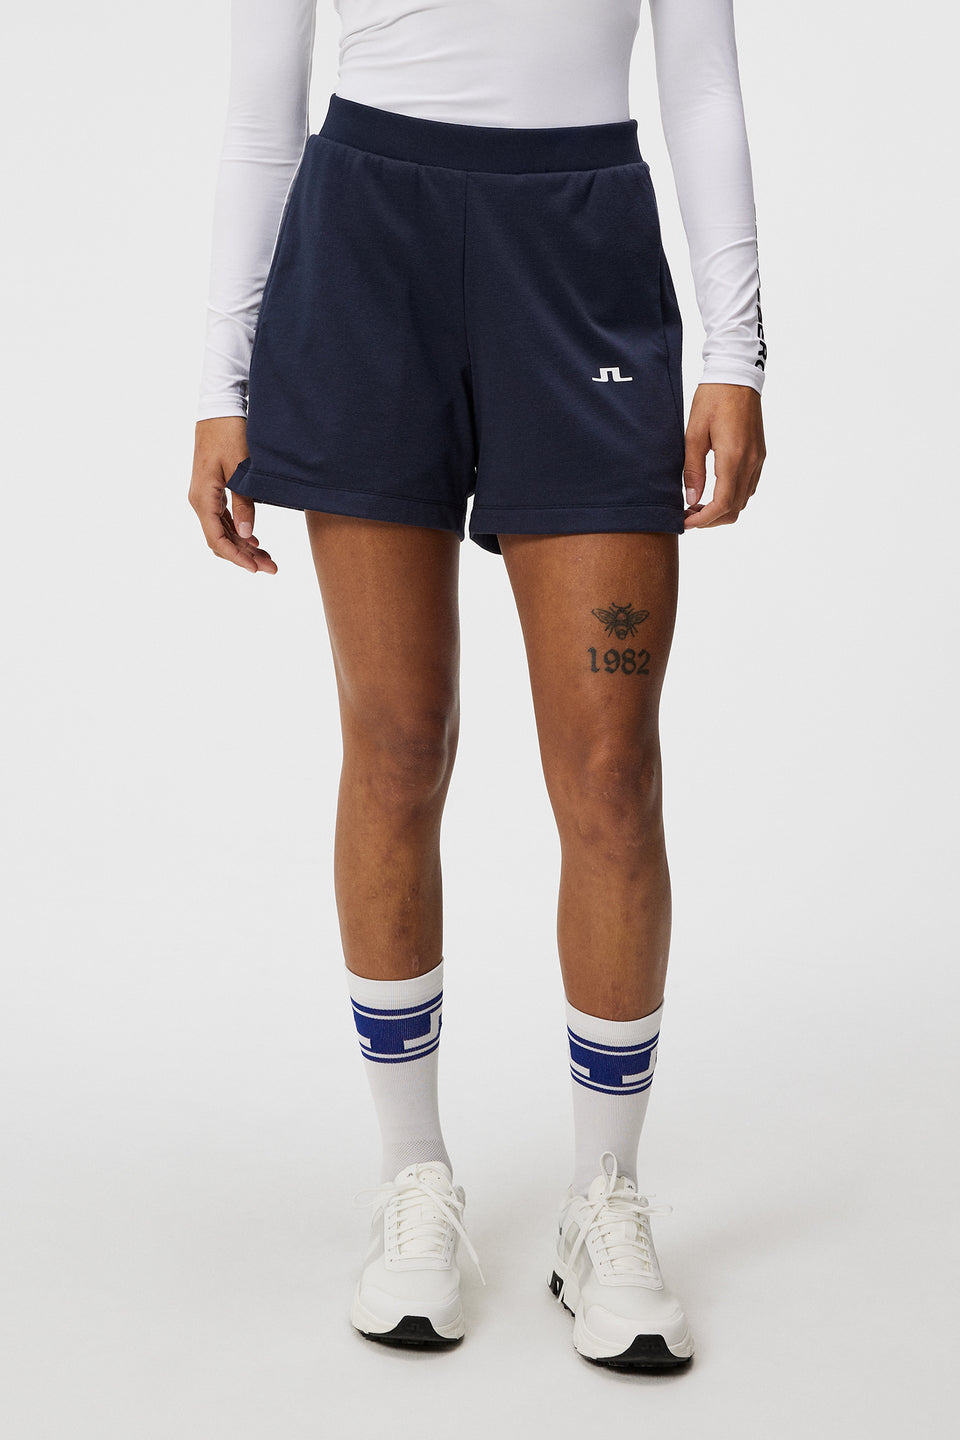 Vice Shorts / JL Navy